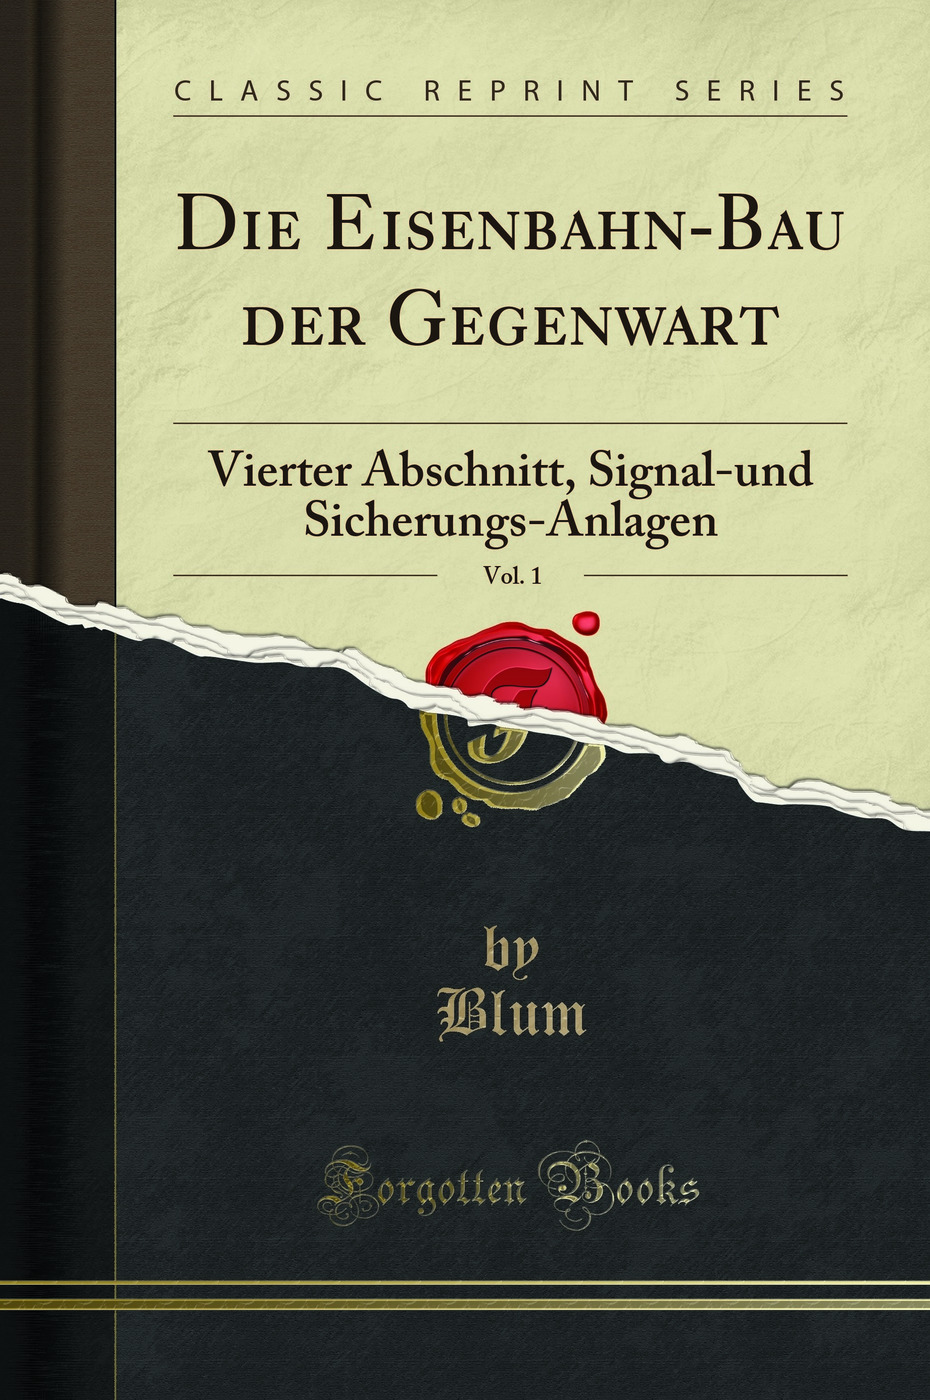 Die Eisenbahn-Bau der Gegenwart, Vol. 1: Vierter Abschnitt (Classic Reprint) - Blum, Borries